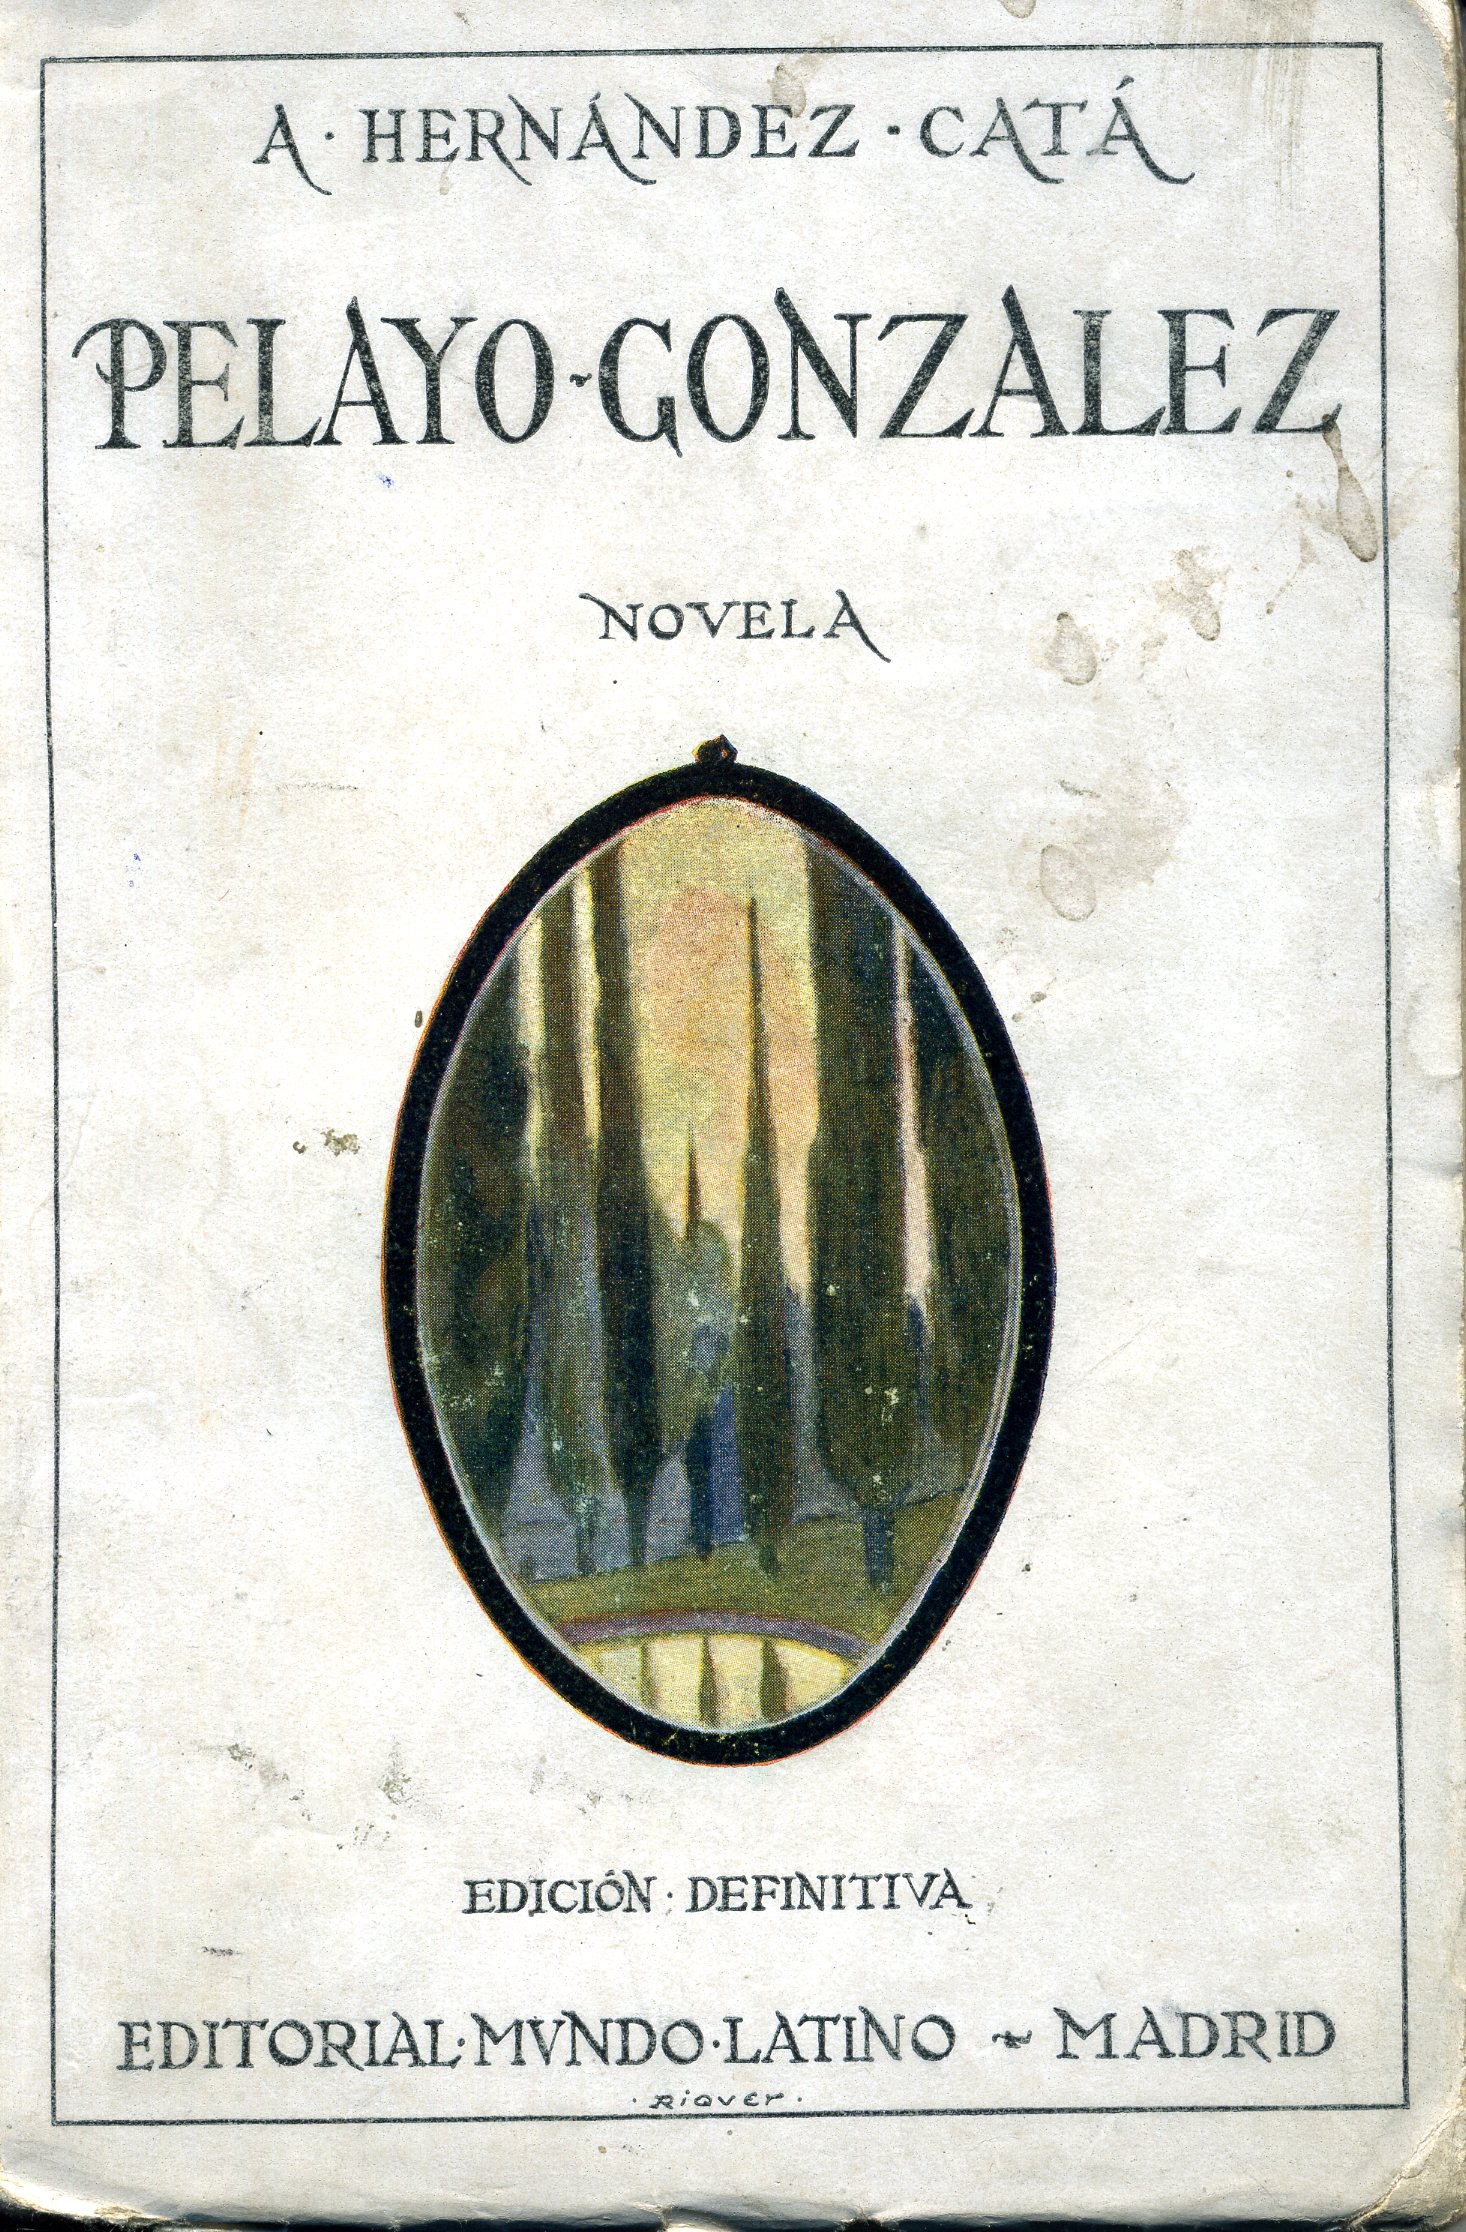 Pelayo- Gonzalez